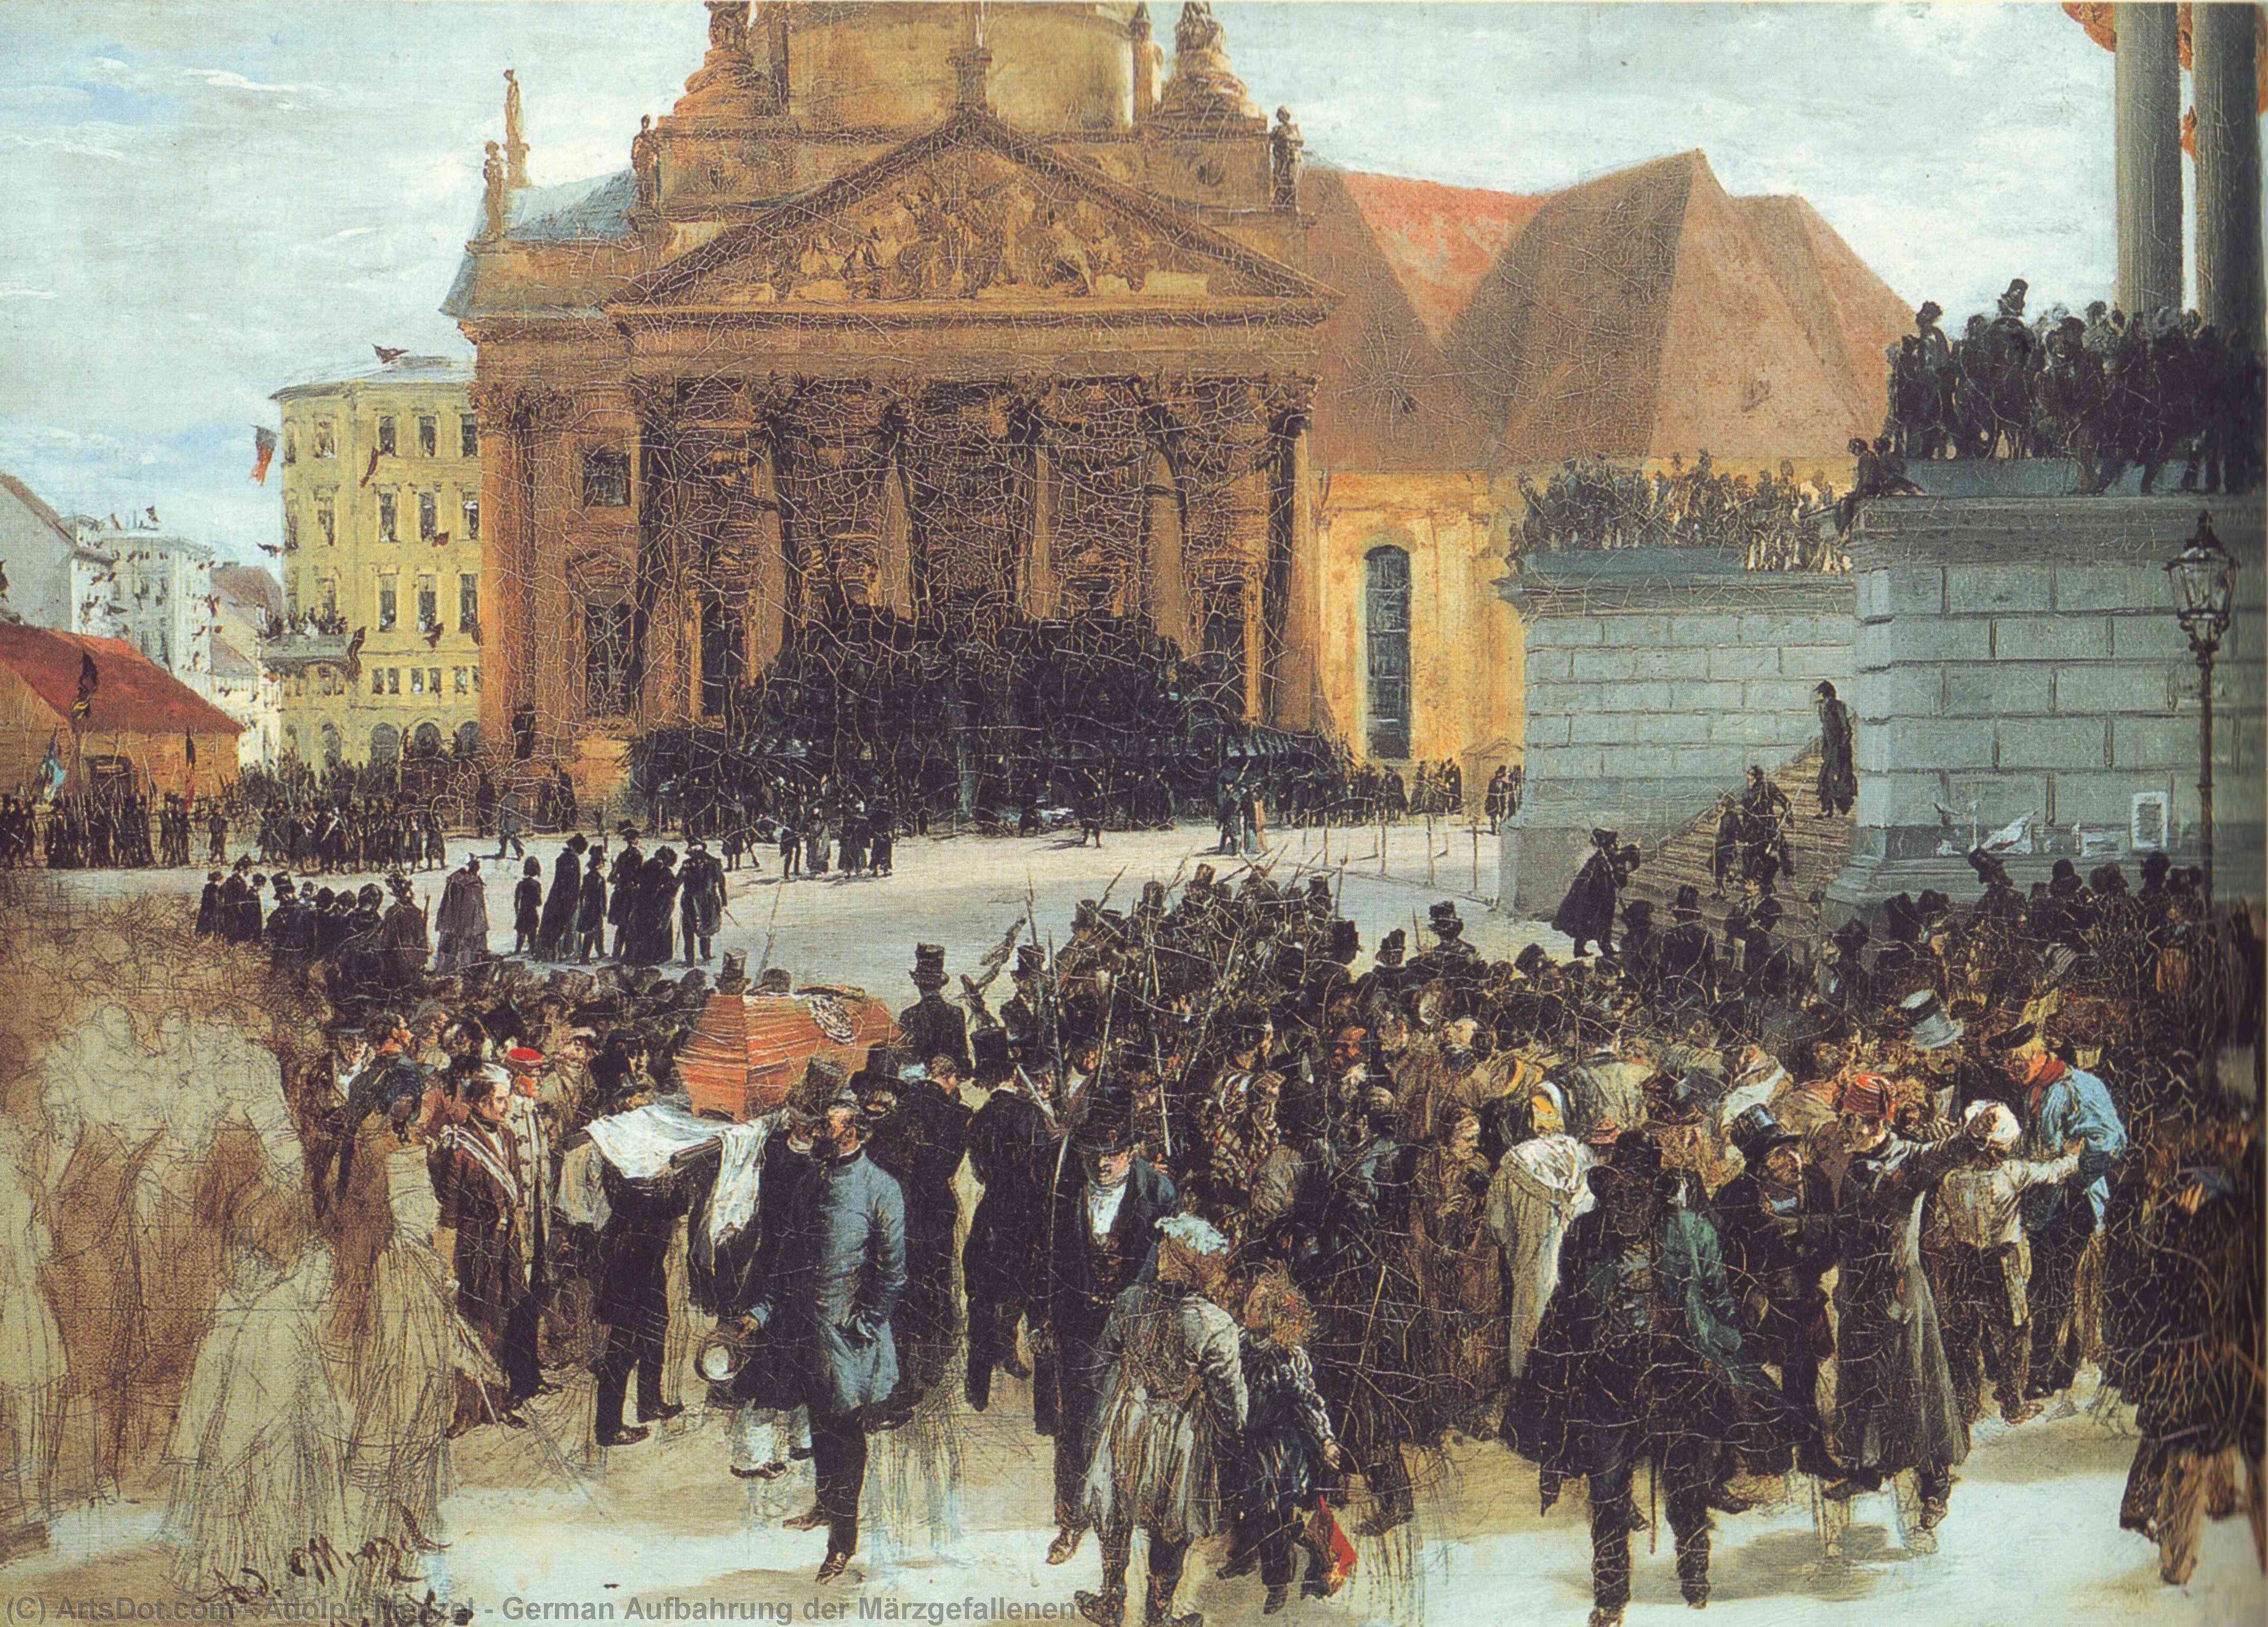 Comprar Reproducciones De Arte Del Museo German Aufbahrung der Märzgefallenen, 1848 de Adolph Menzel | ArtsDot.com